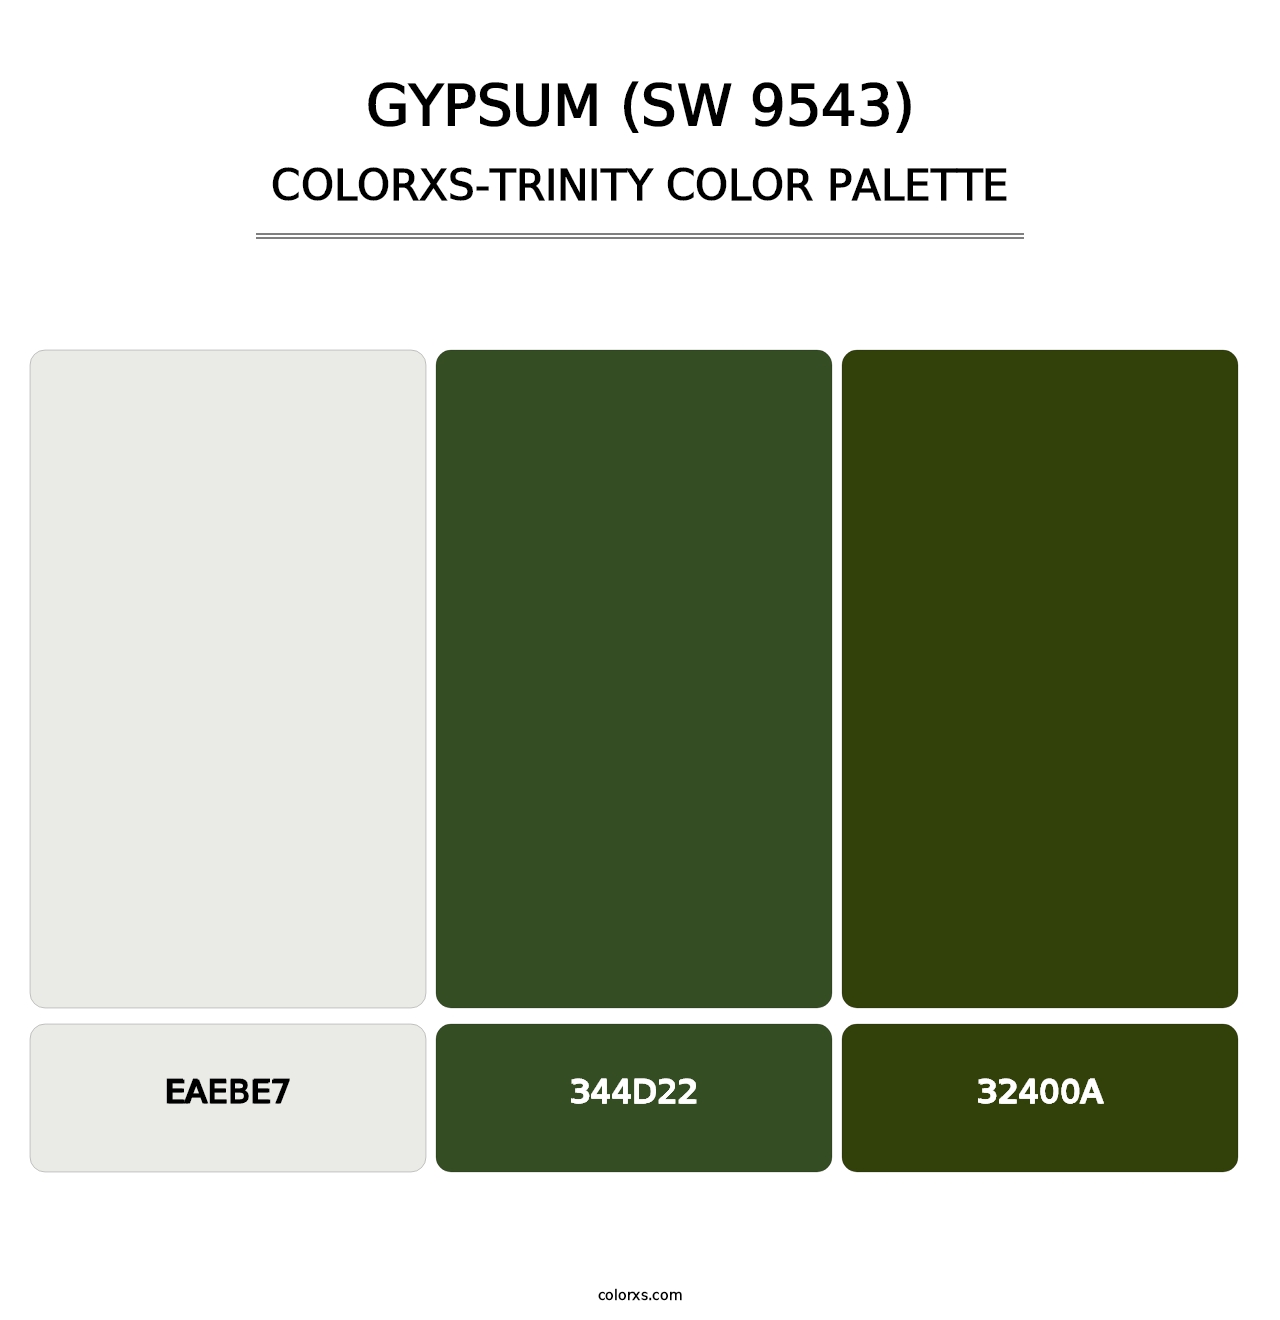 Gypsum (SW 9543) - Colorxs Trinity Palette